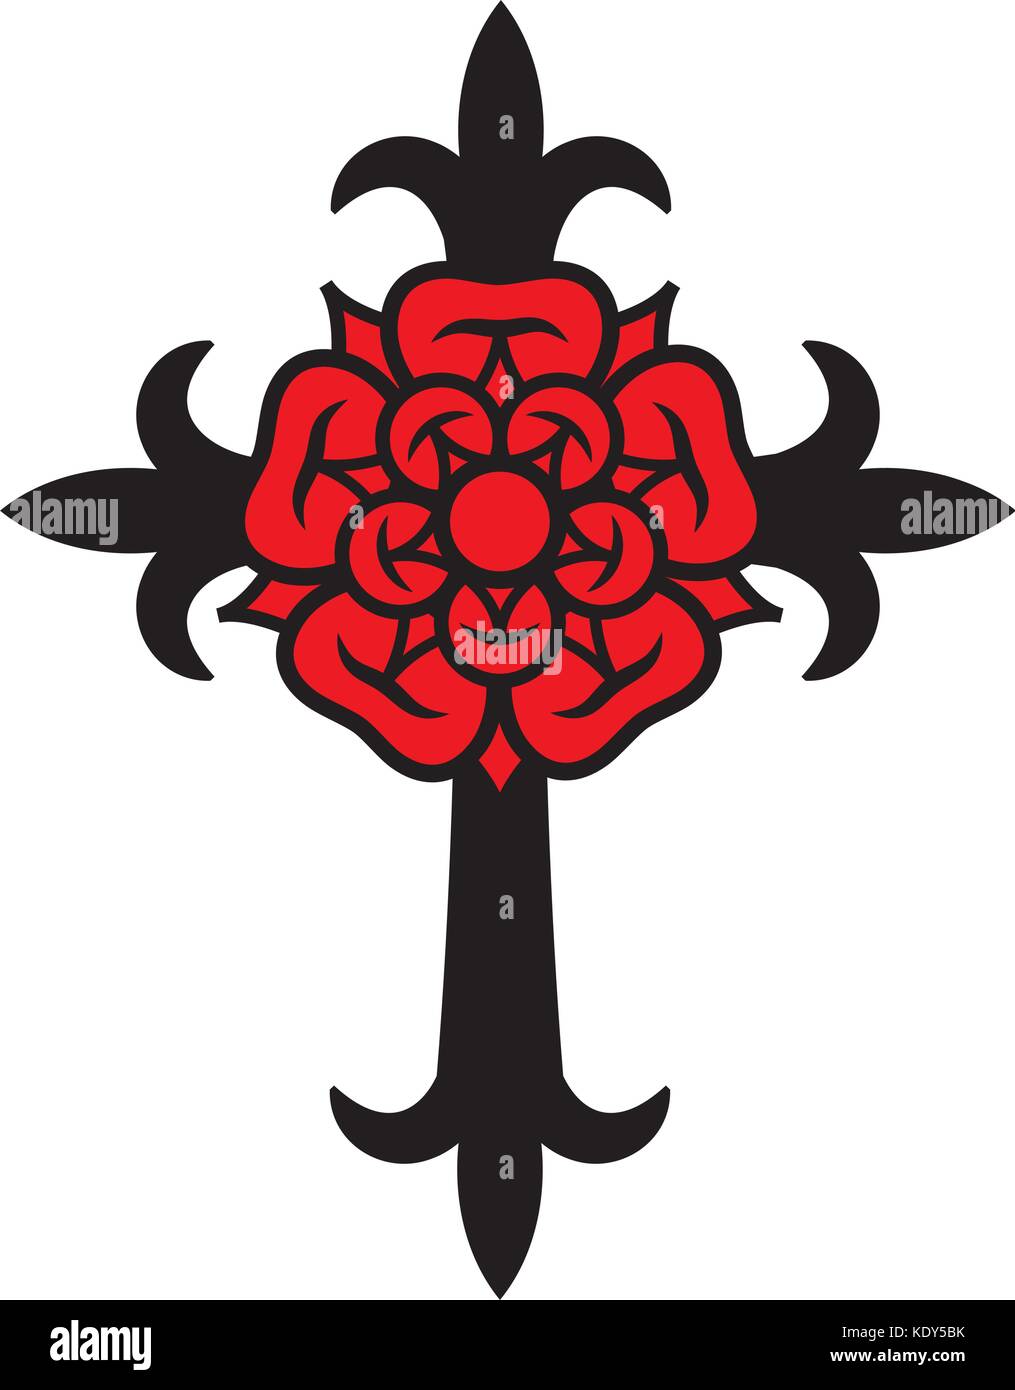 Rosenkreuz (Croce con Rosa). Simbolo mistico sacrale dei Rosicruciani (Rosenkreuzer), emblema della società segreta. Illustrazione Vettoriale